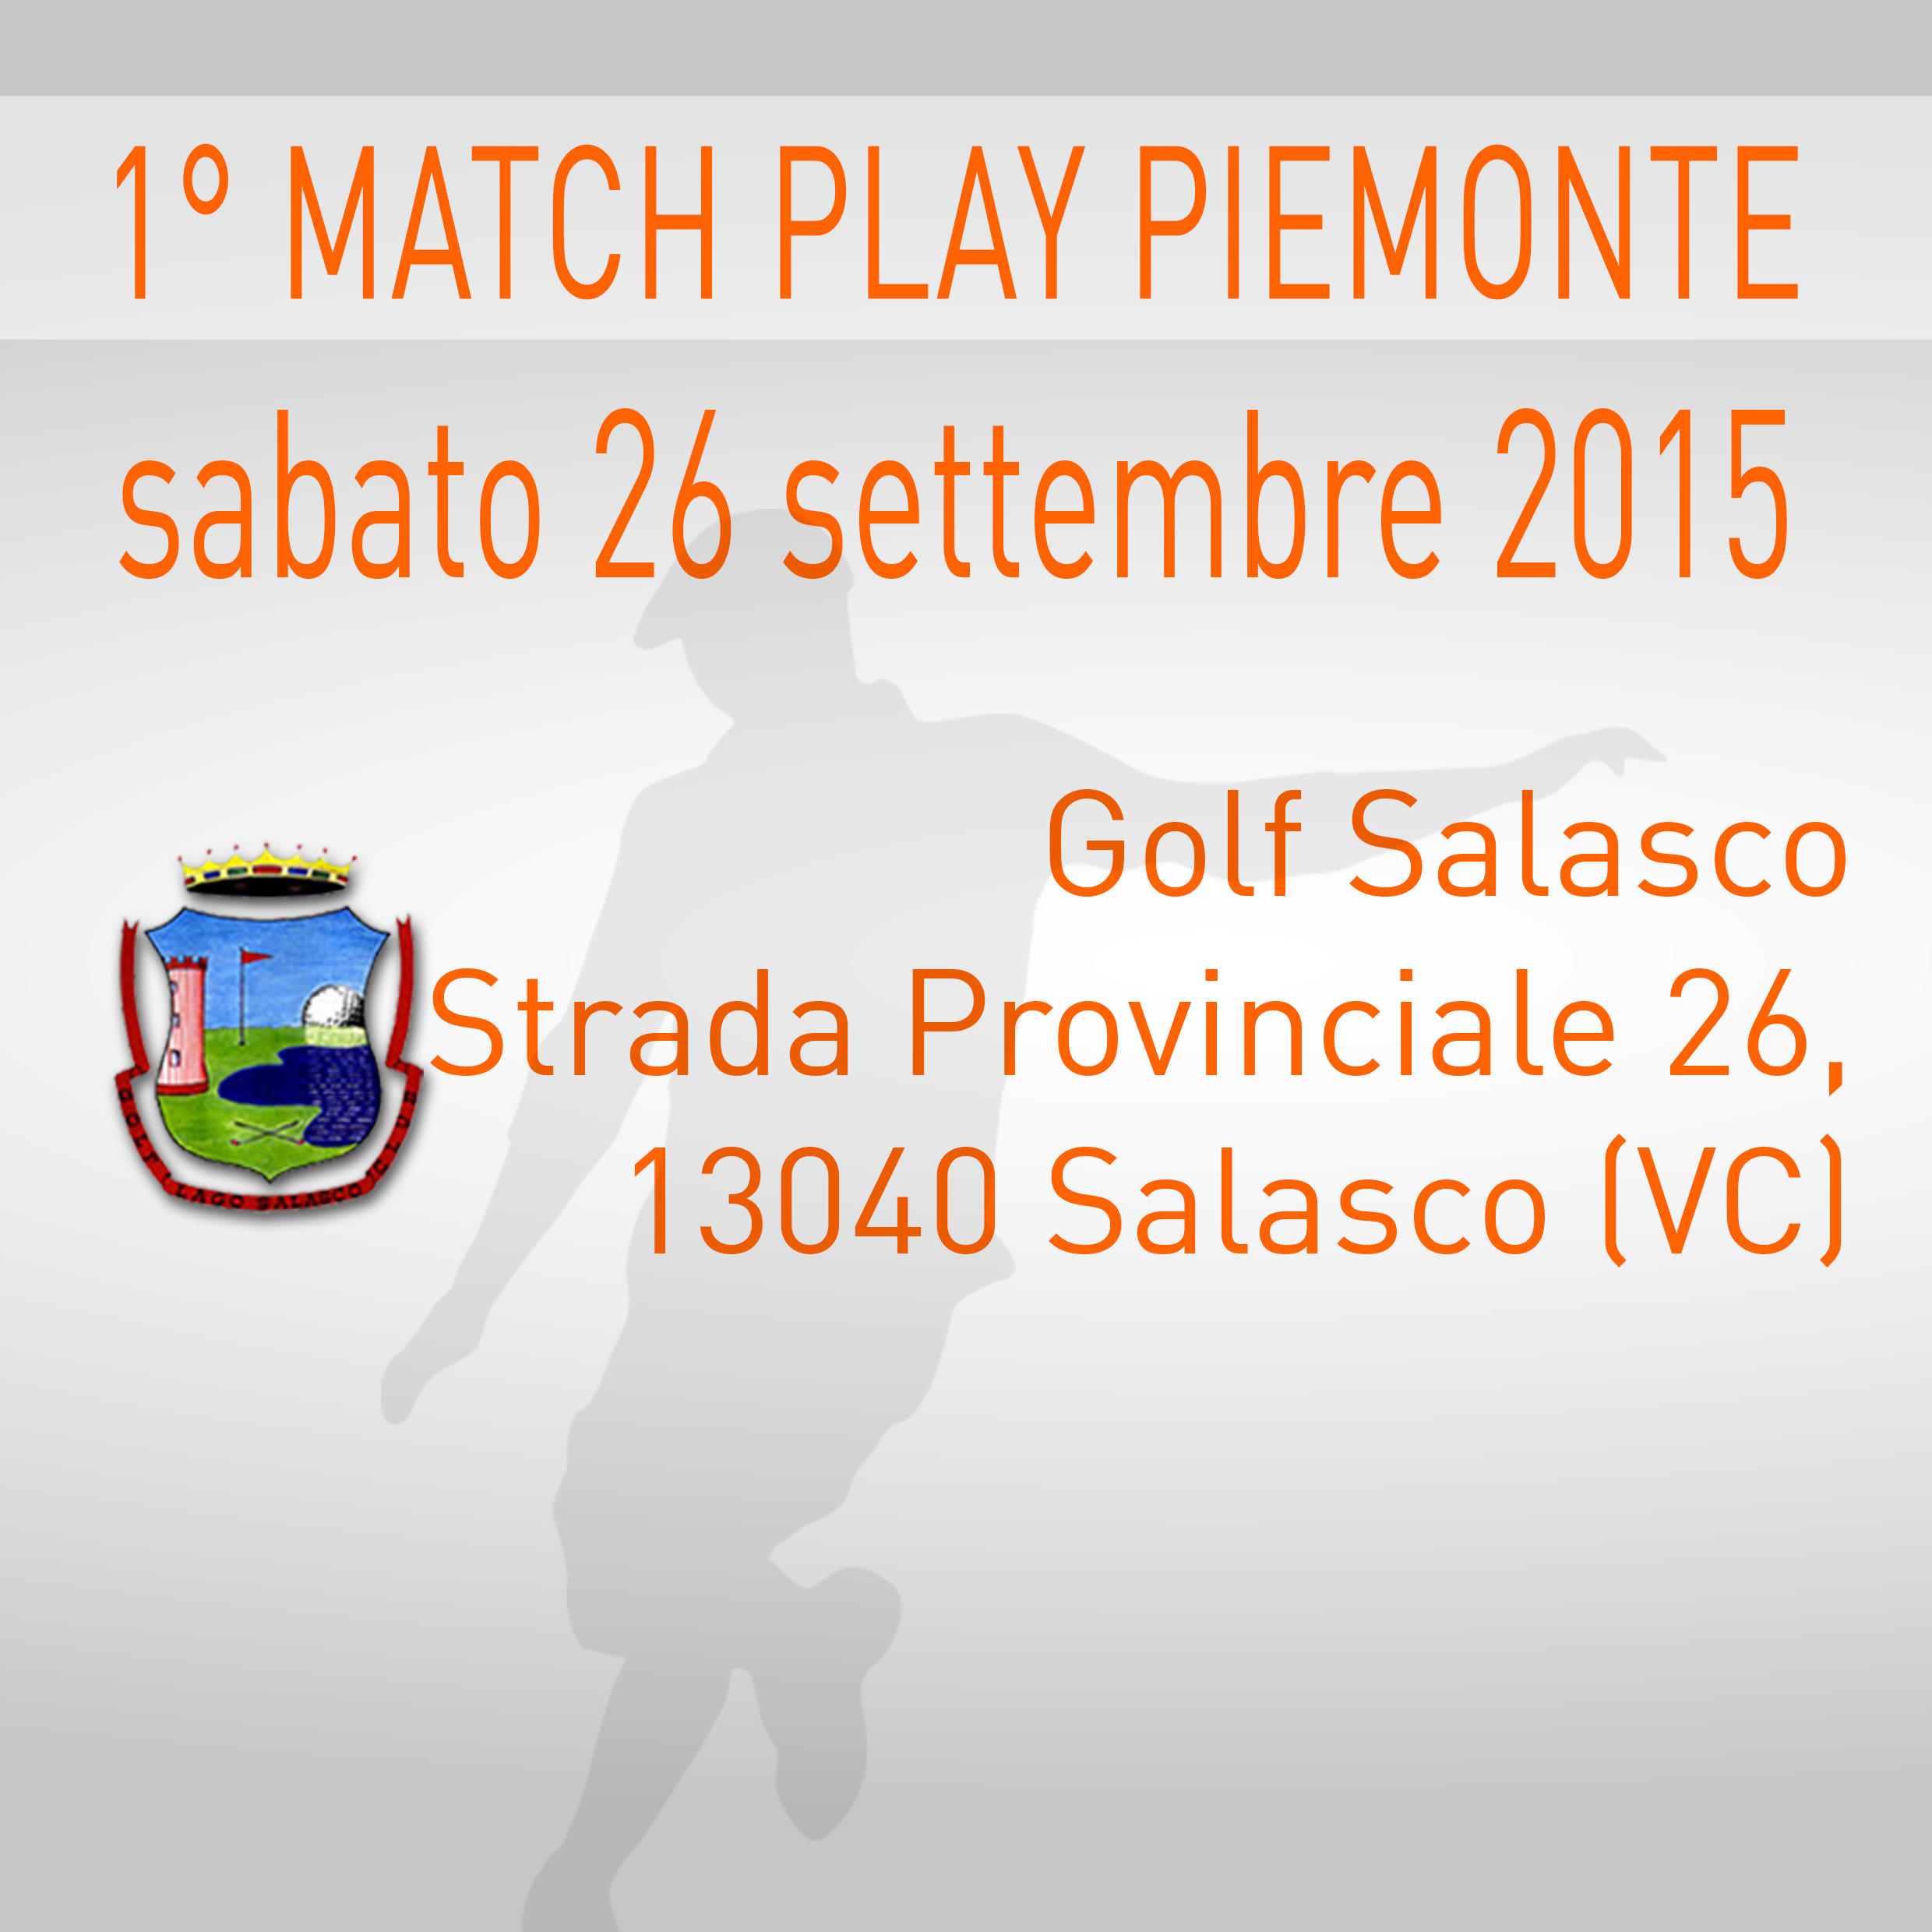 Locandina 1 tappa Match Play Championship Footgolf Piemonte 2015/2016 Salasco VC sabato 26 settembre 2015 Negozio